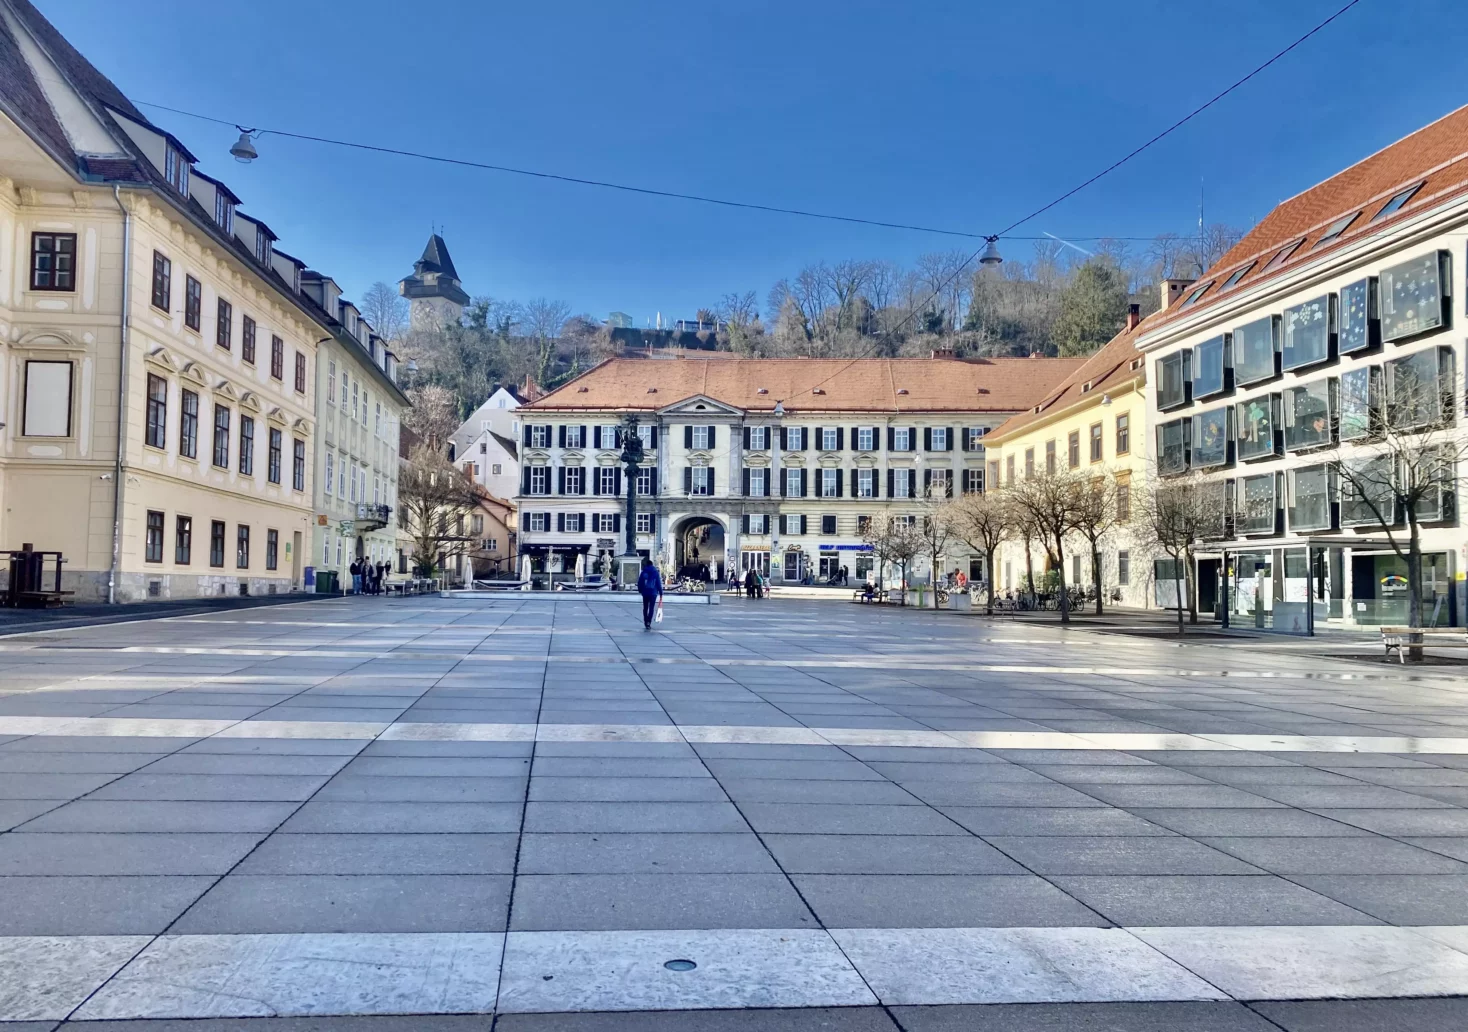 Bild auf 5min.at zeigt den Grazer Karmeliterplatz.